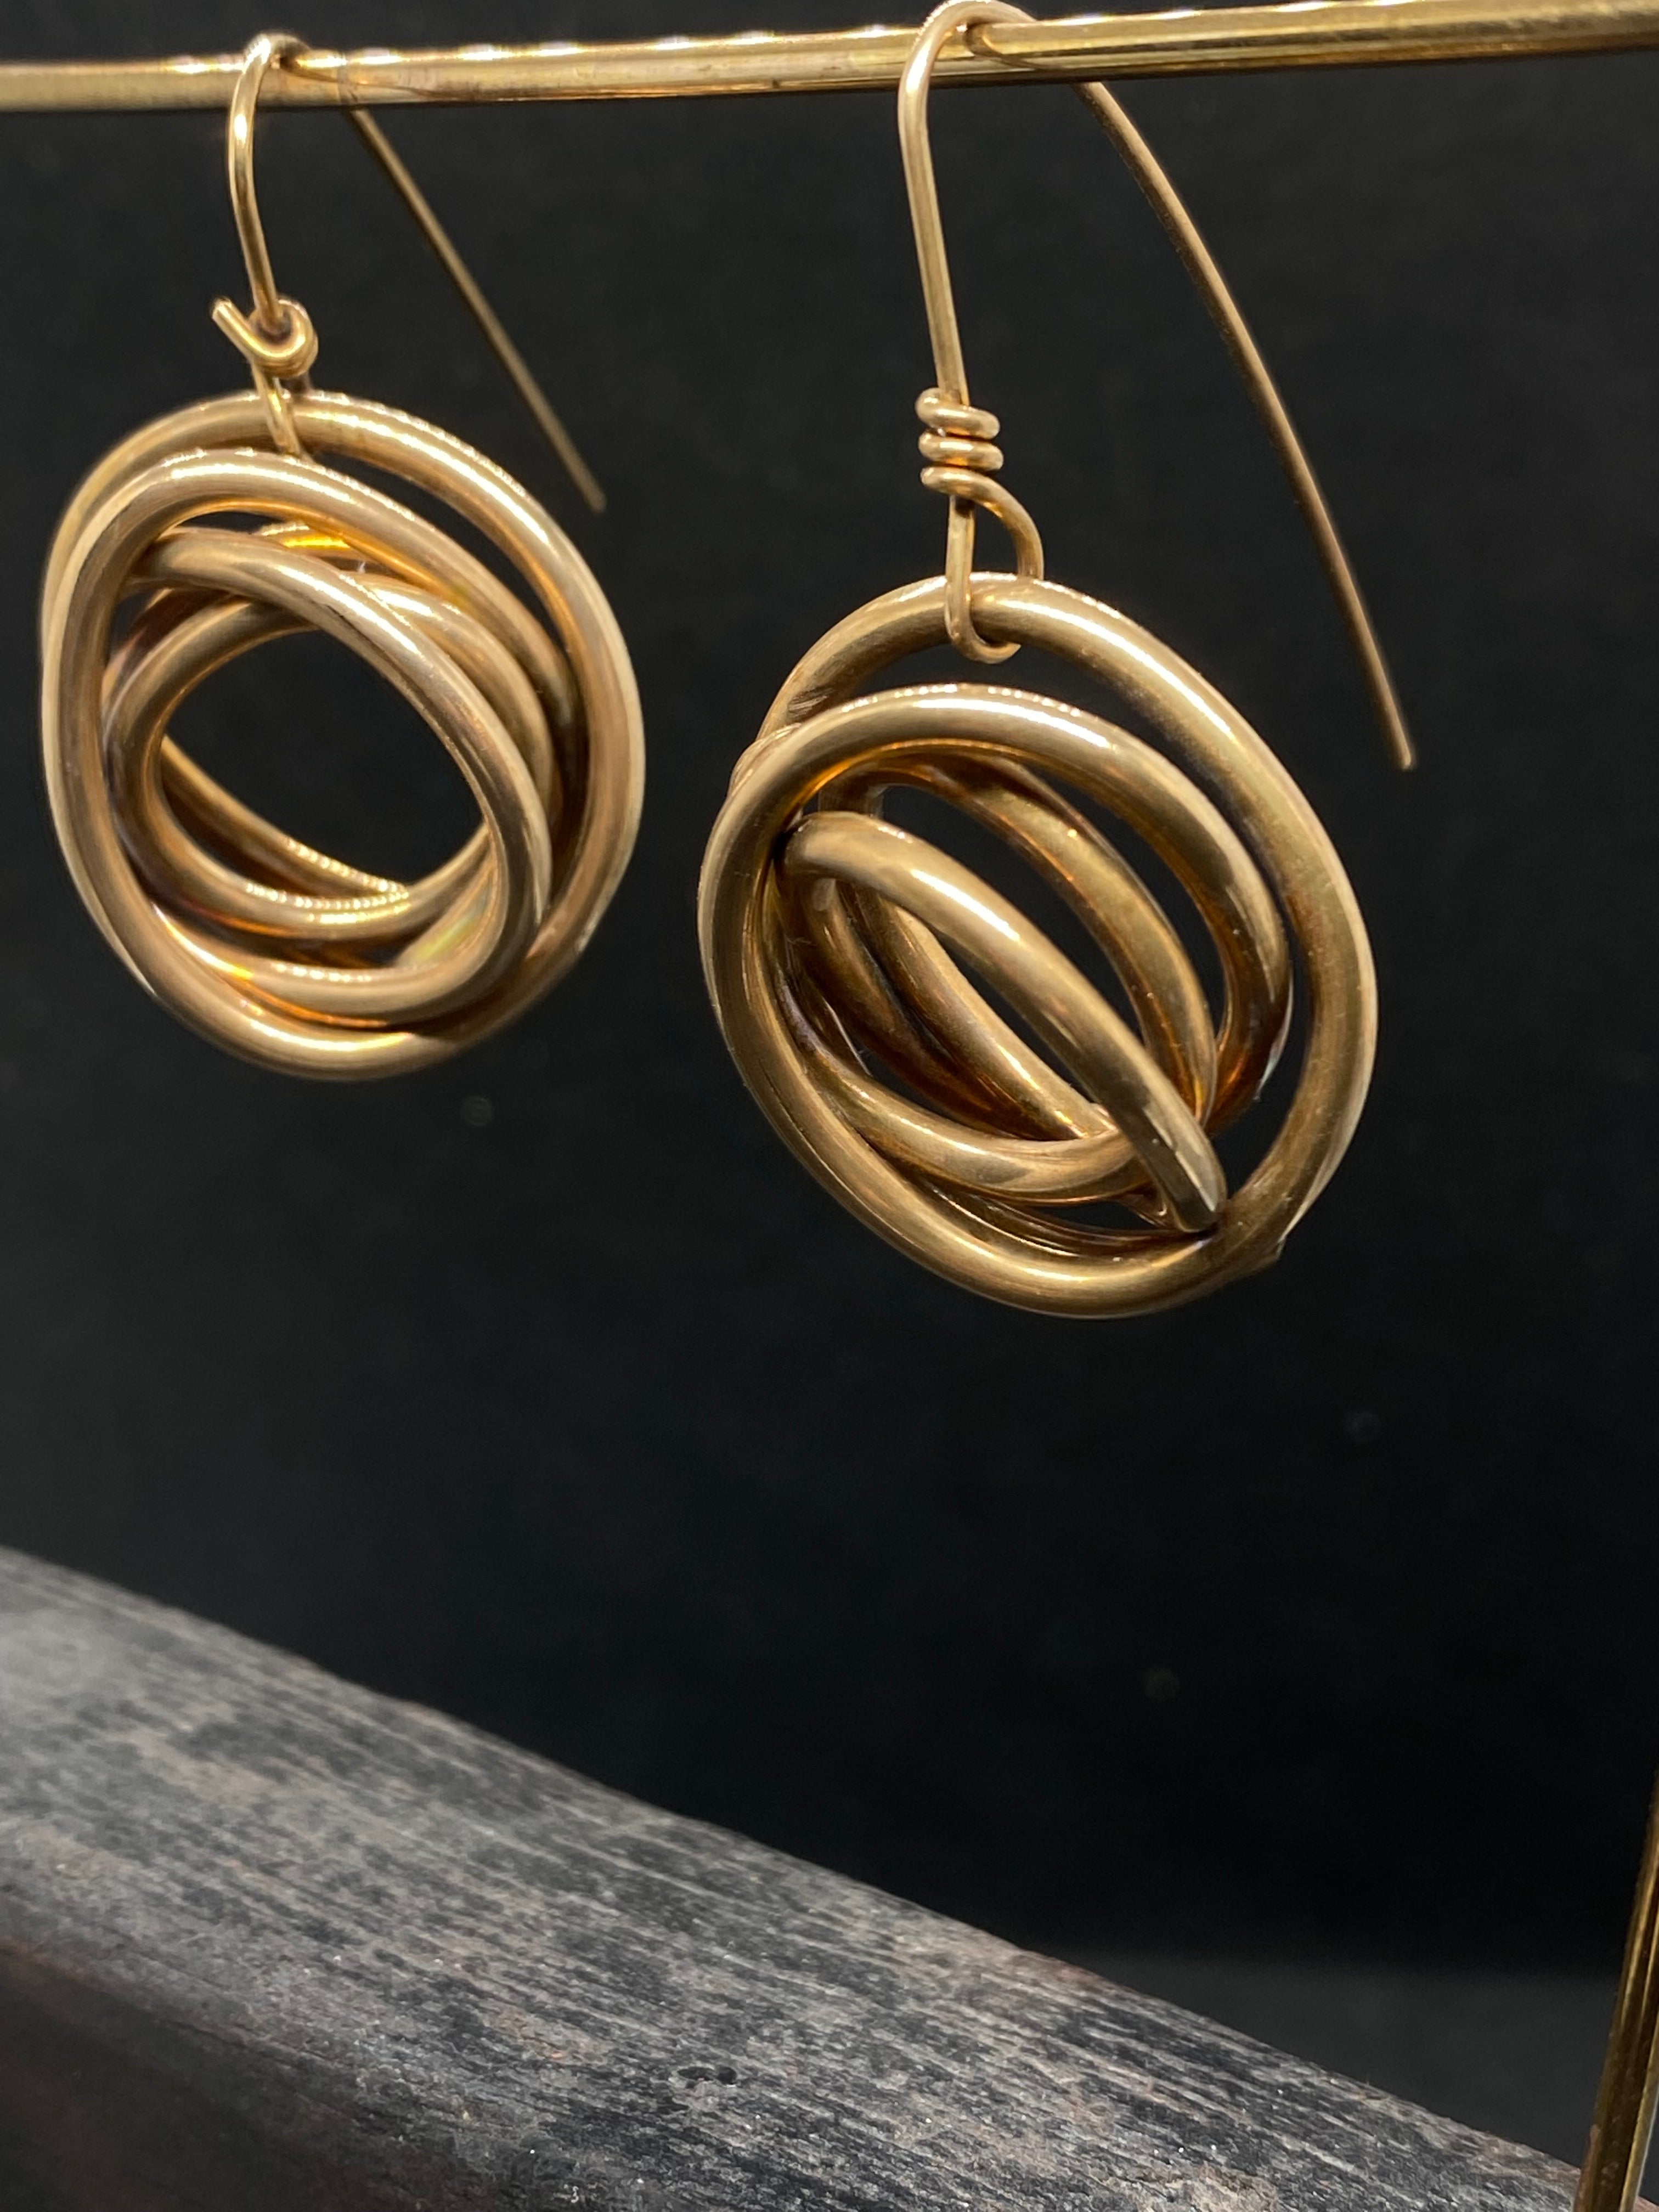 Intertwined bronze earrings